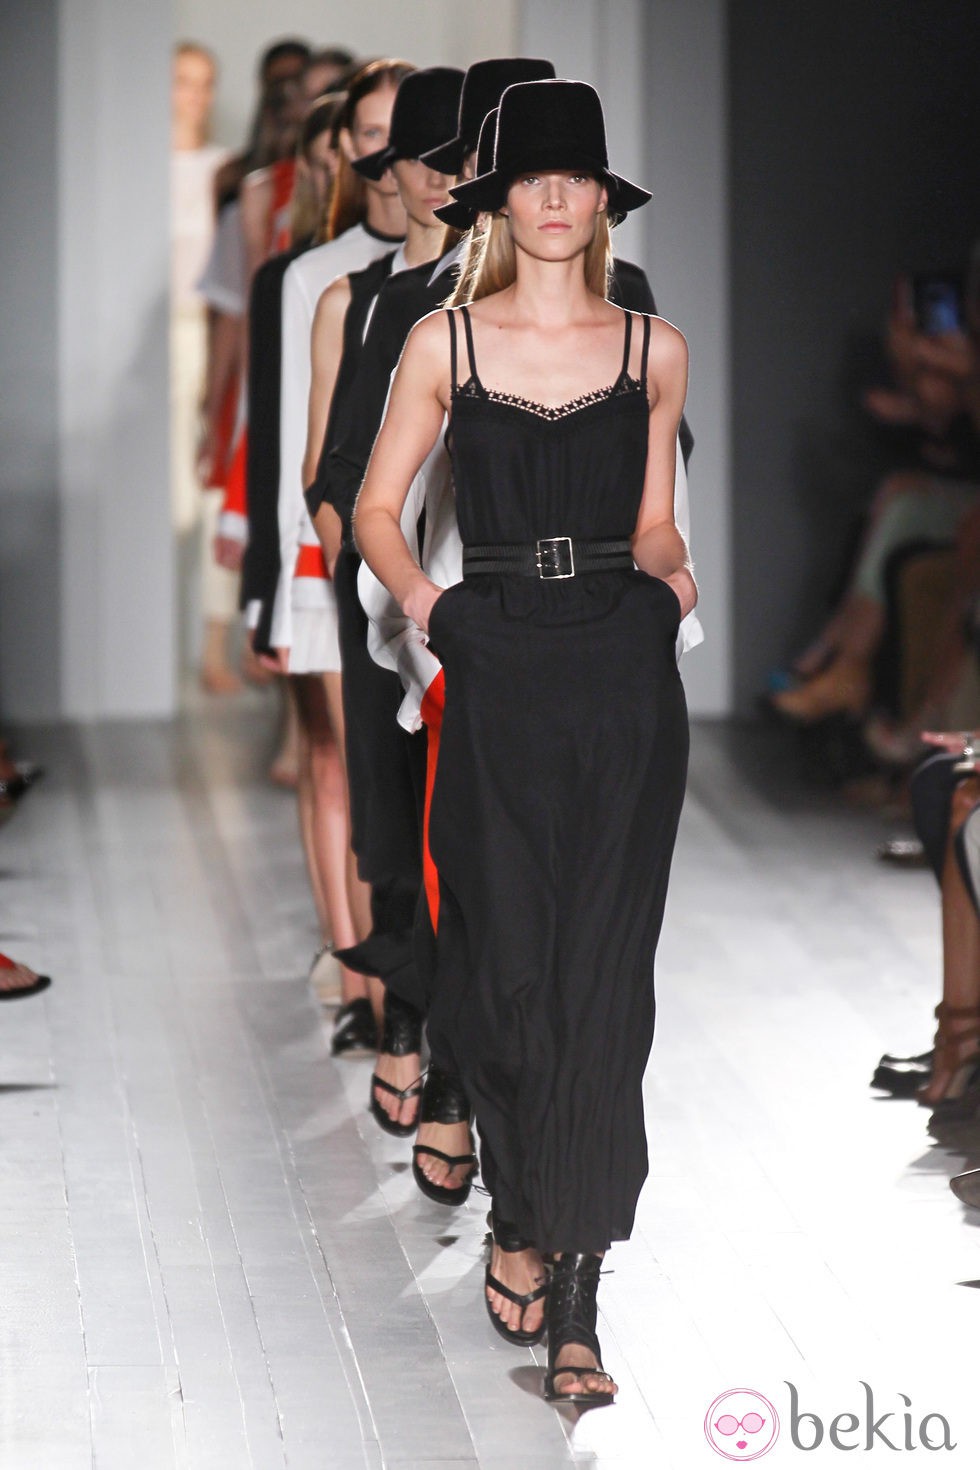 Colección primavera/verano 2013 de Victoria Beckham en la Nueva York Fashion Week